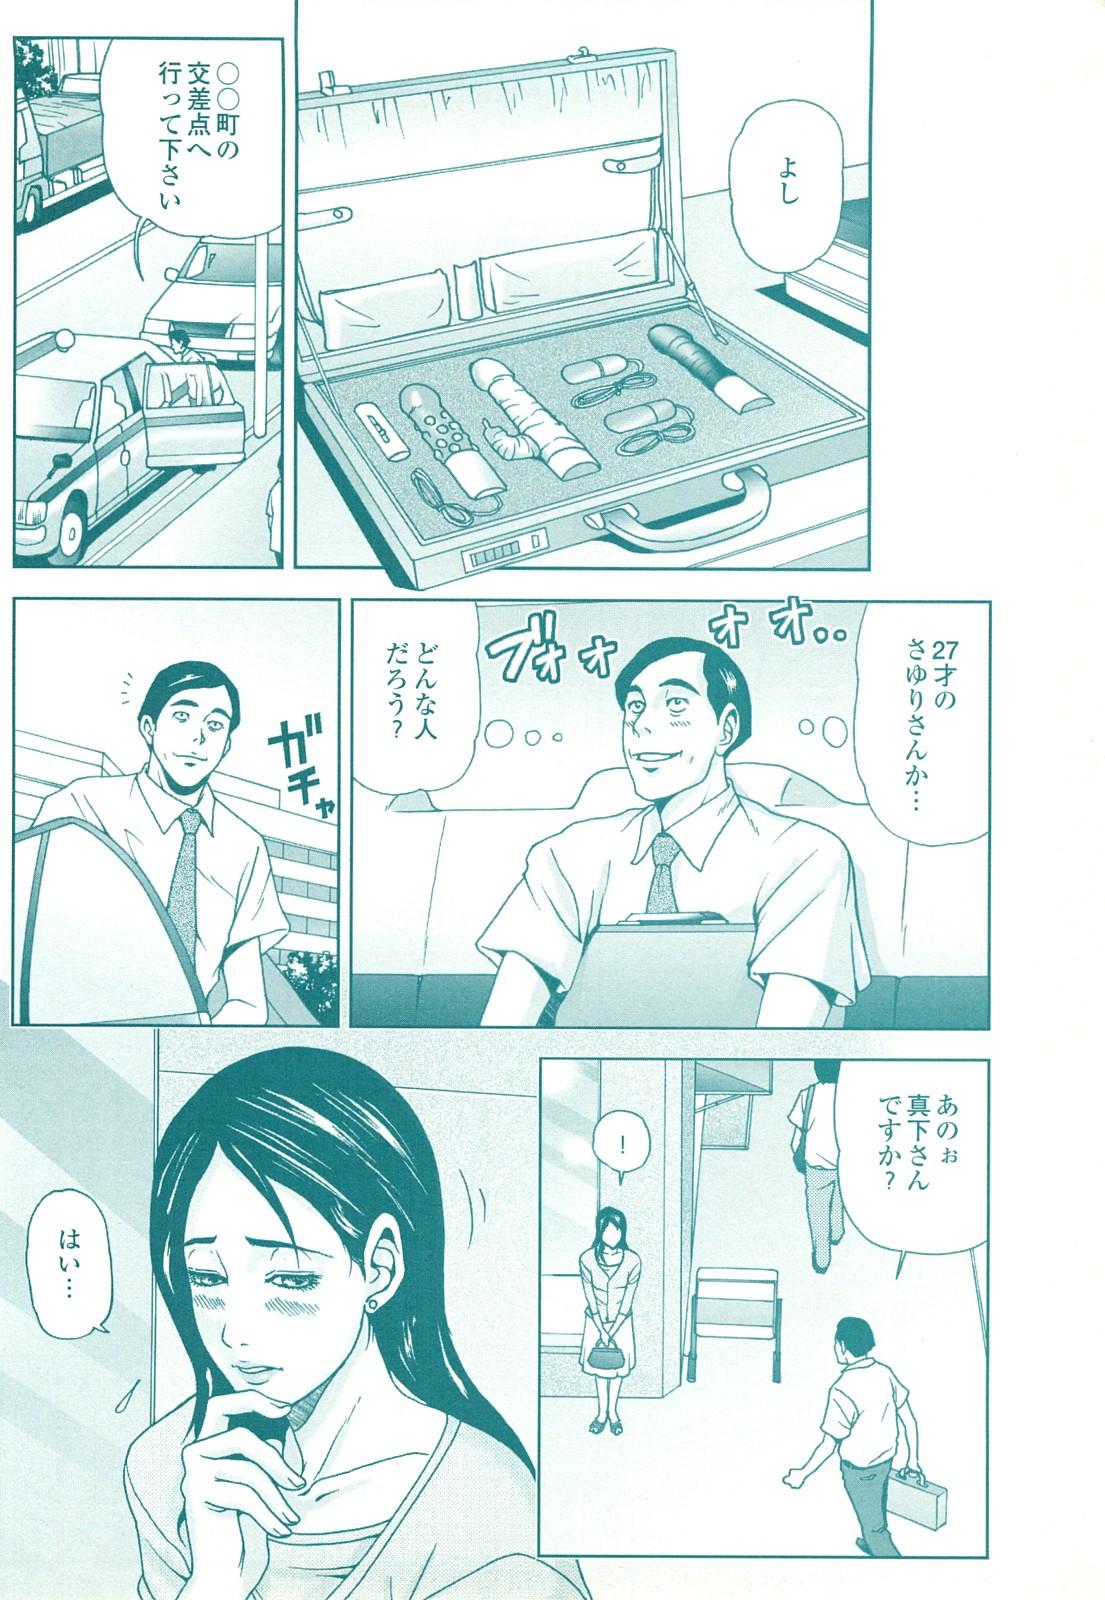 コミック裏モノJAPAN Vol.18 今井のりたつスペシャル号 169